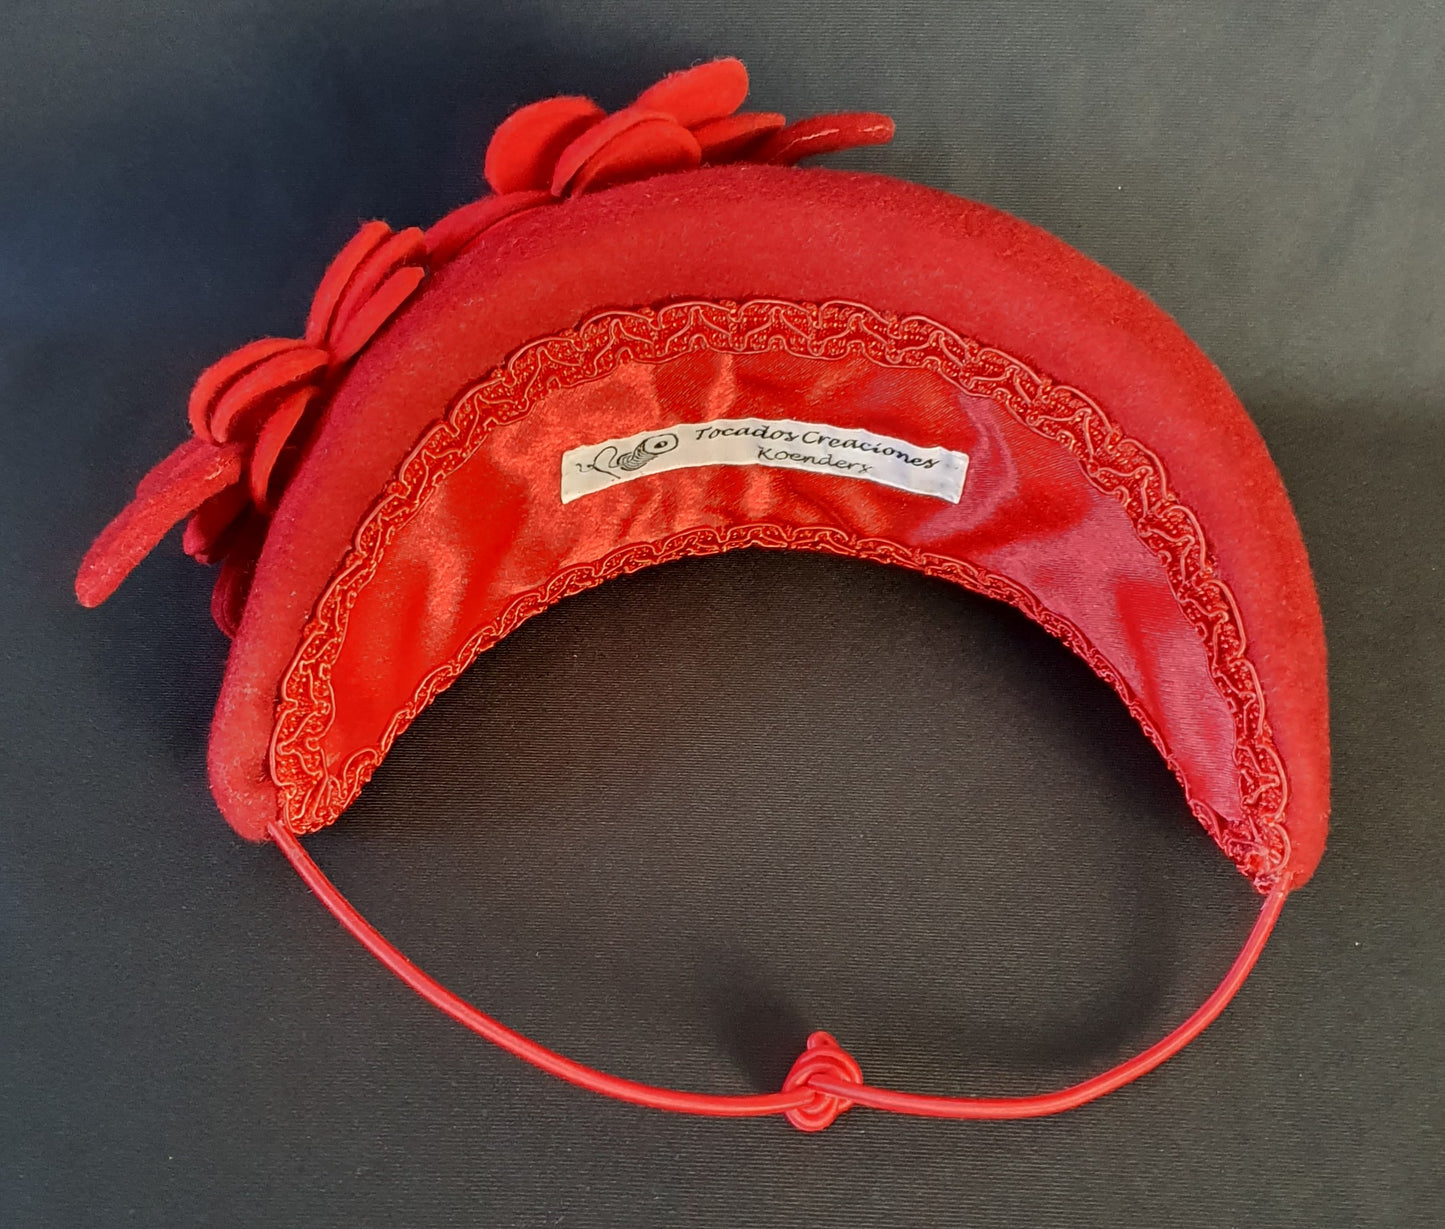 Rode vilten hoofdband met bloemen en bladeren - handgemaakt accessoire voor gasten, bruiden & speciale gelegenheden